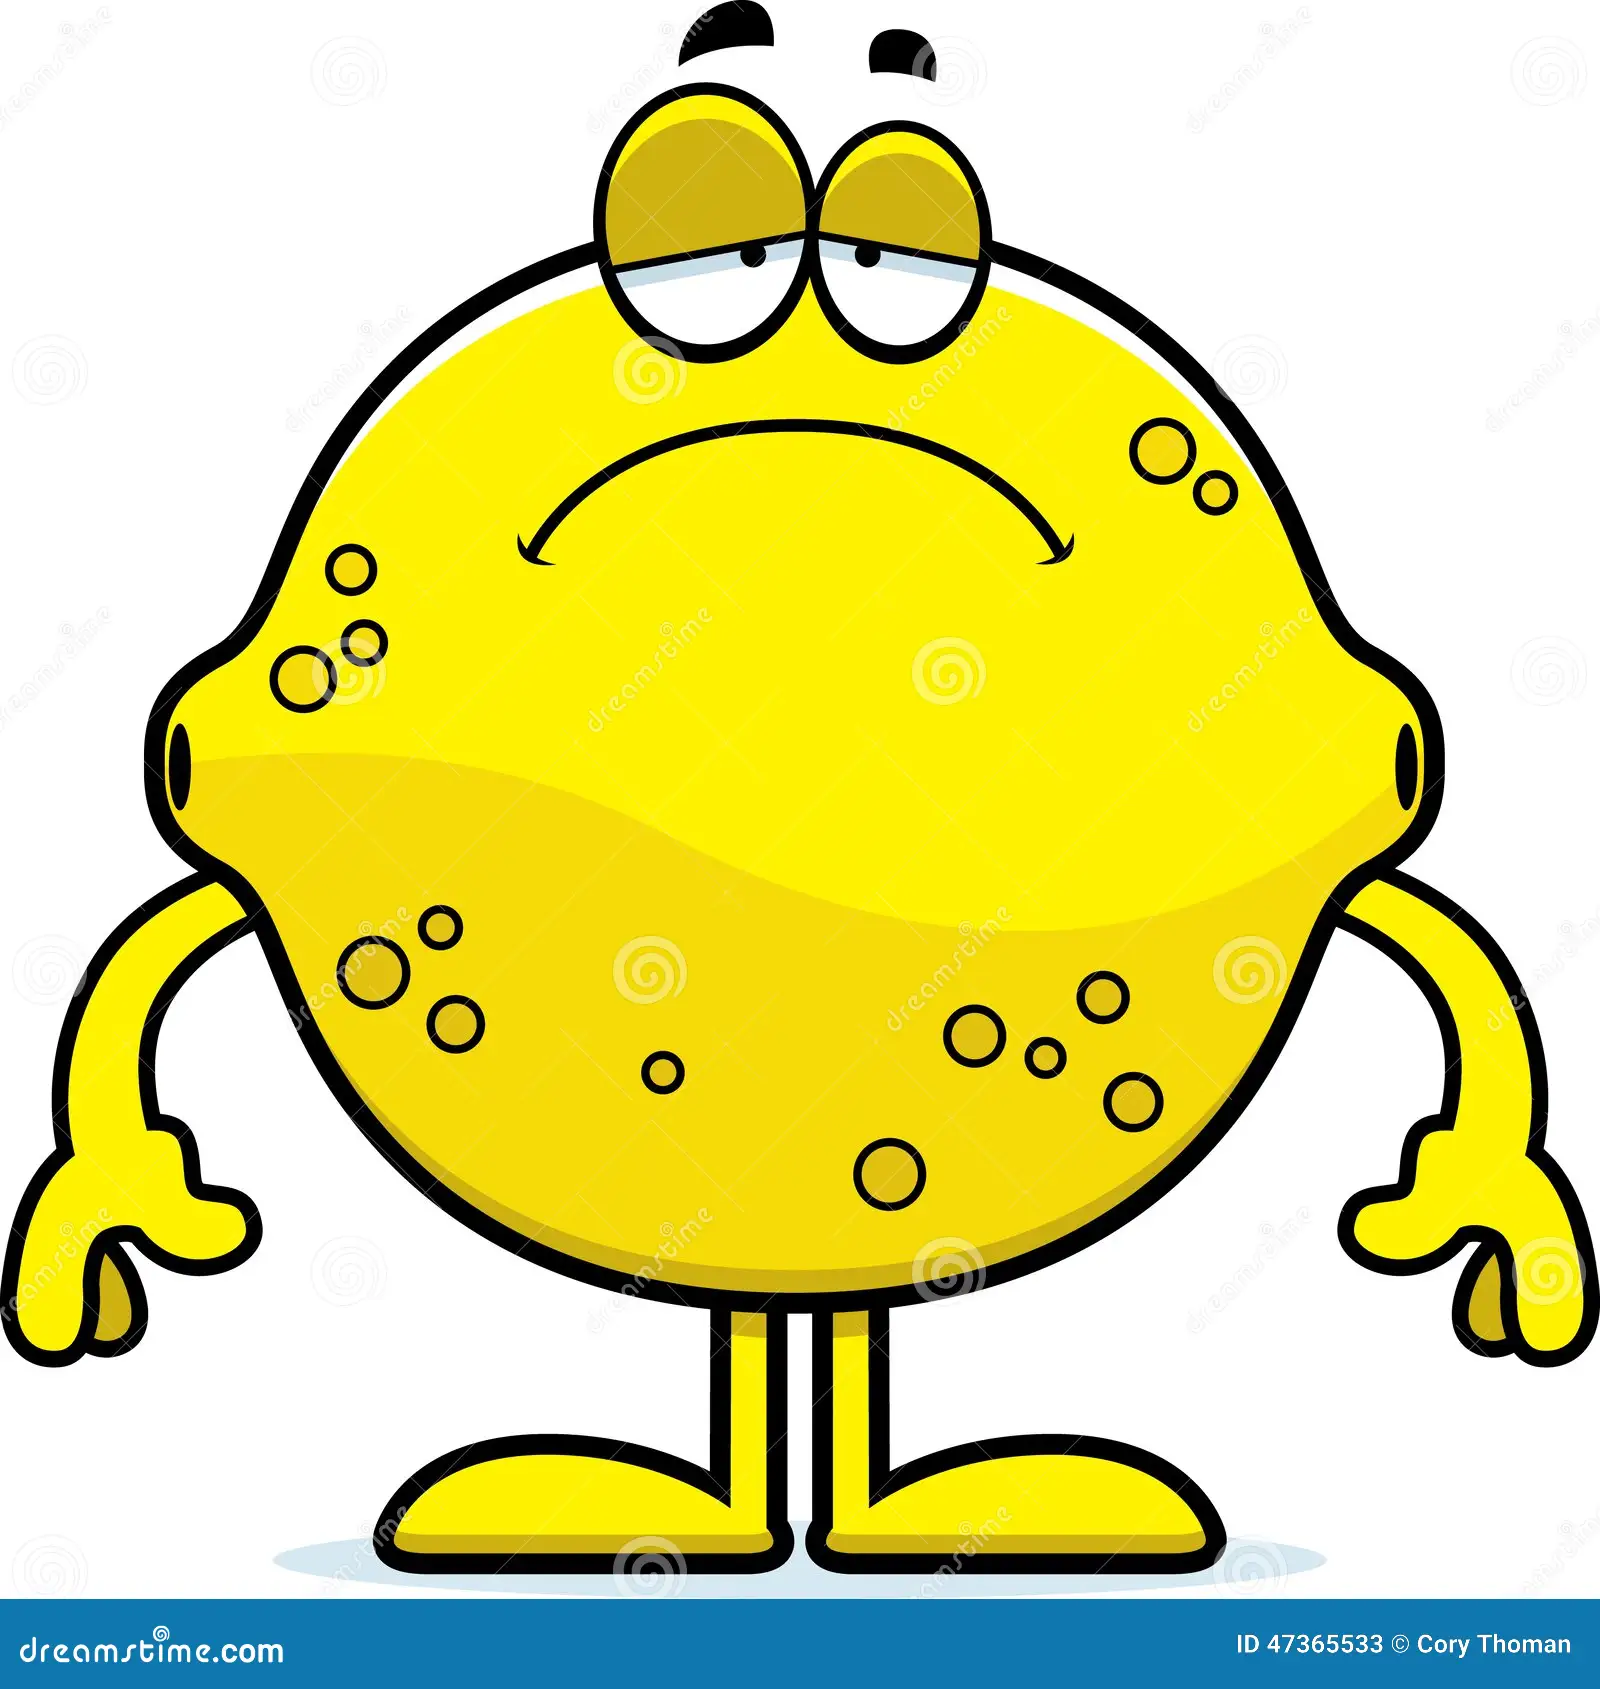 sad-cartoon-lemon-illustration-looking-47365533.webp